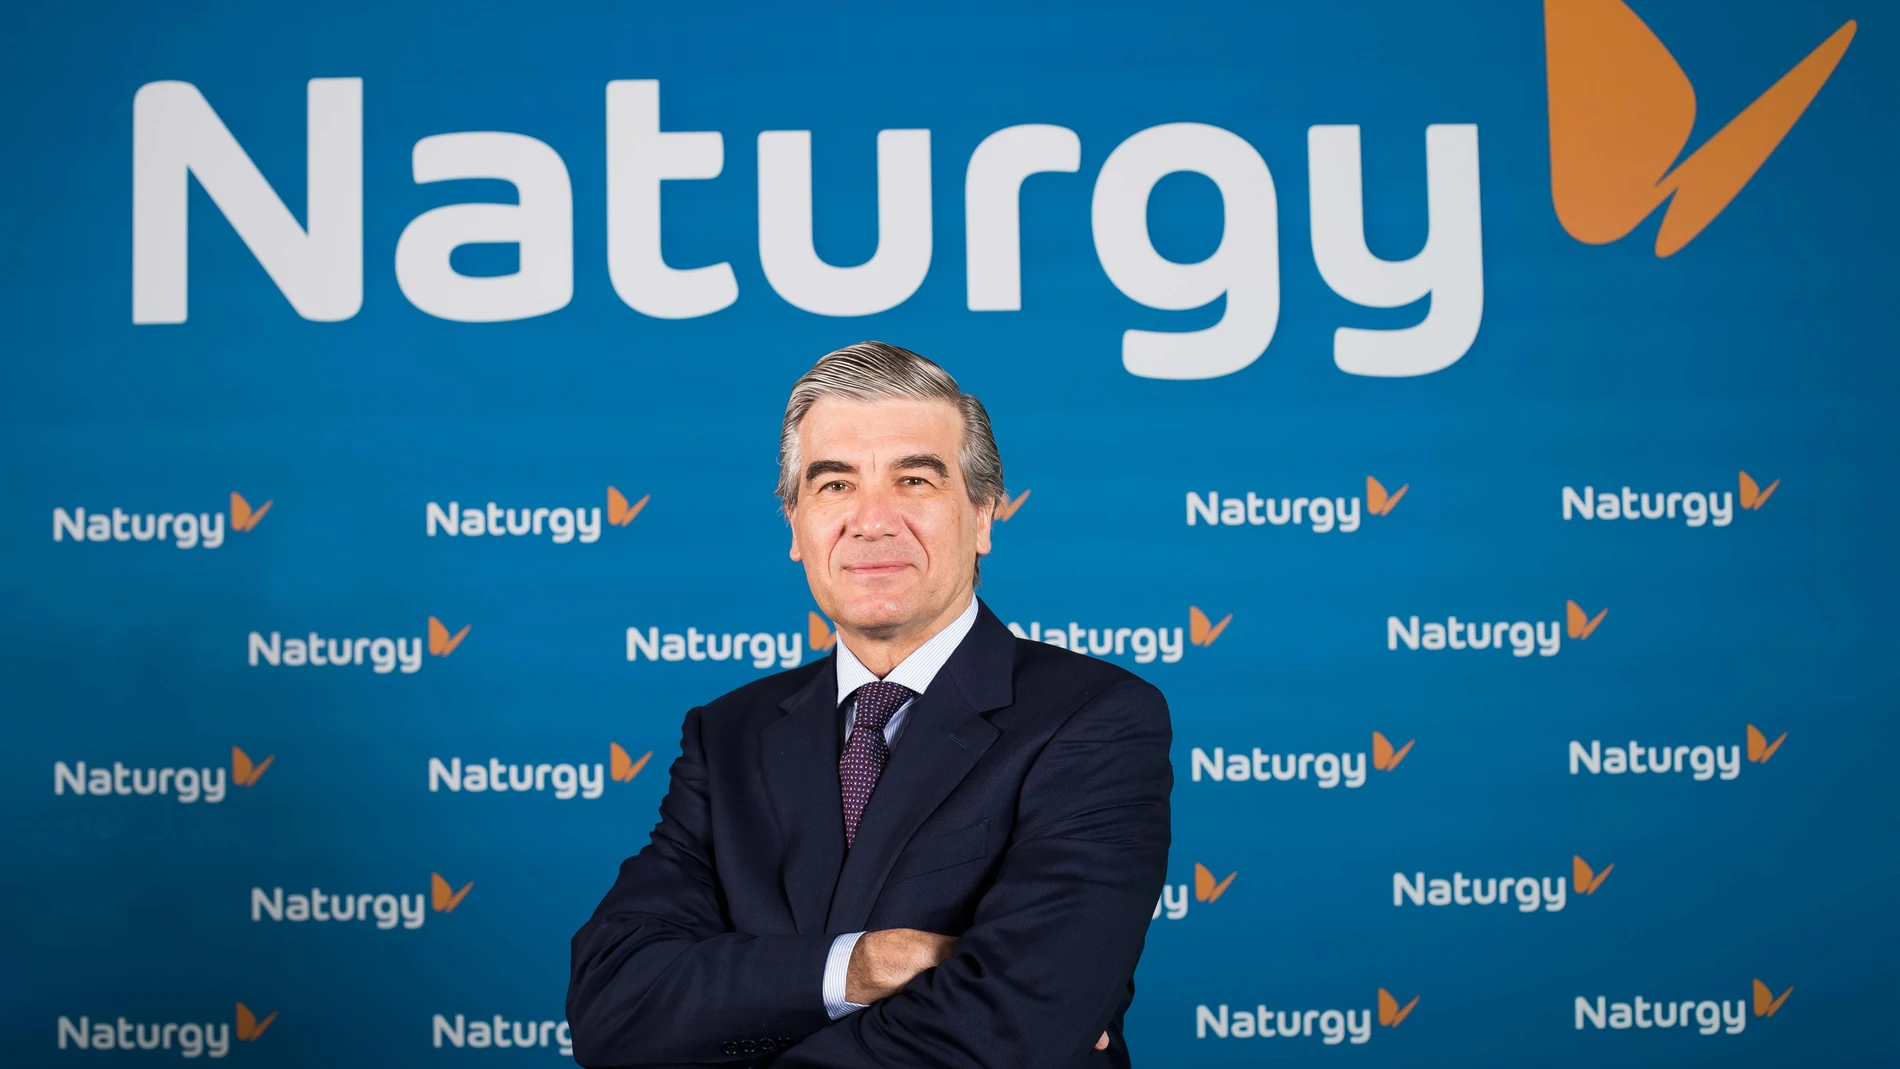 Economía.- Naturgy se adjudica el suministro eléctrico del Grupo Correos por 48 millones